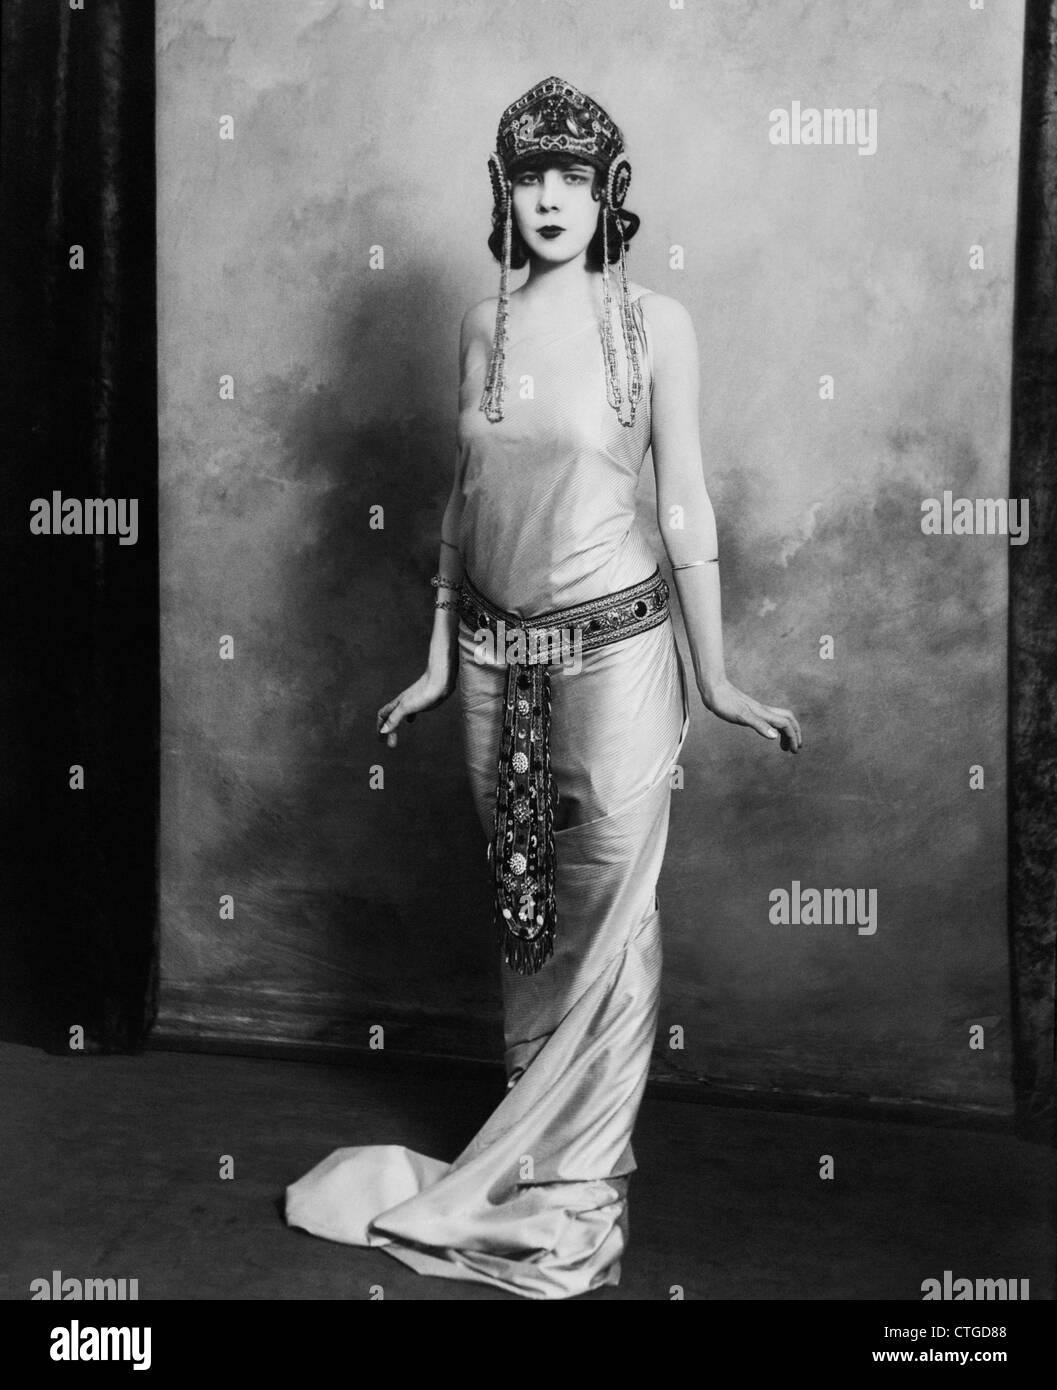 Années 1920 FEMME PORTANT ÉGYPTIEN EXOTIQUE INSPIRÉ ROBE boiteux avec costume cravate CEINTURE BIJOUX FASHION Banque D'Images